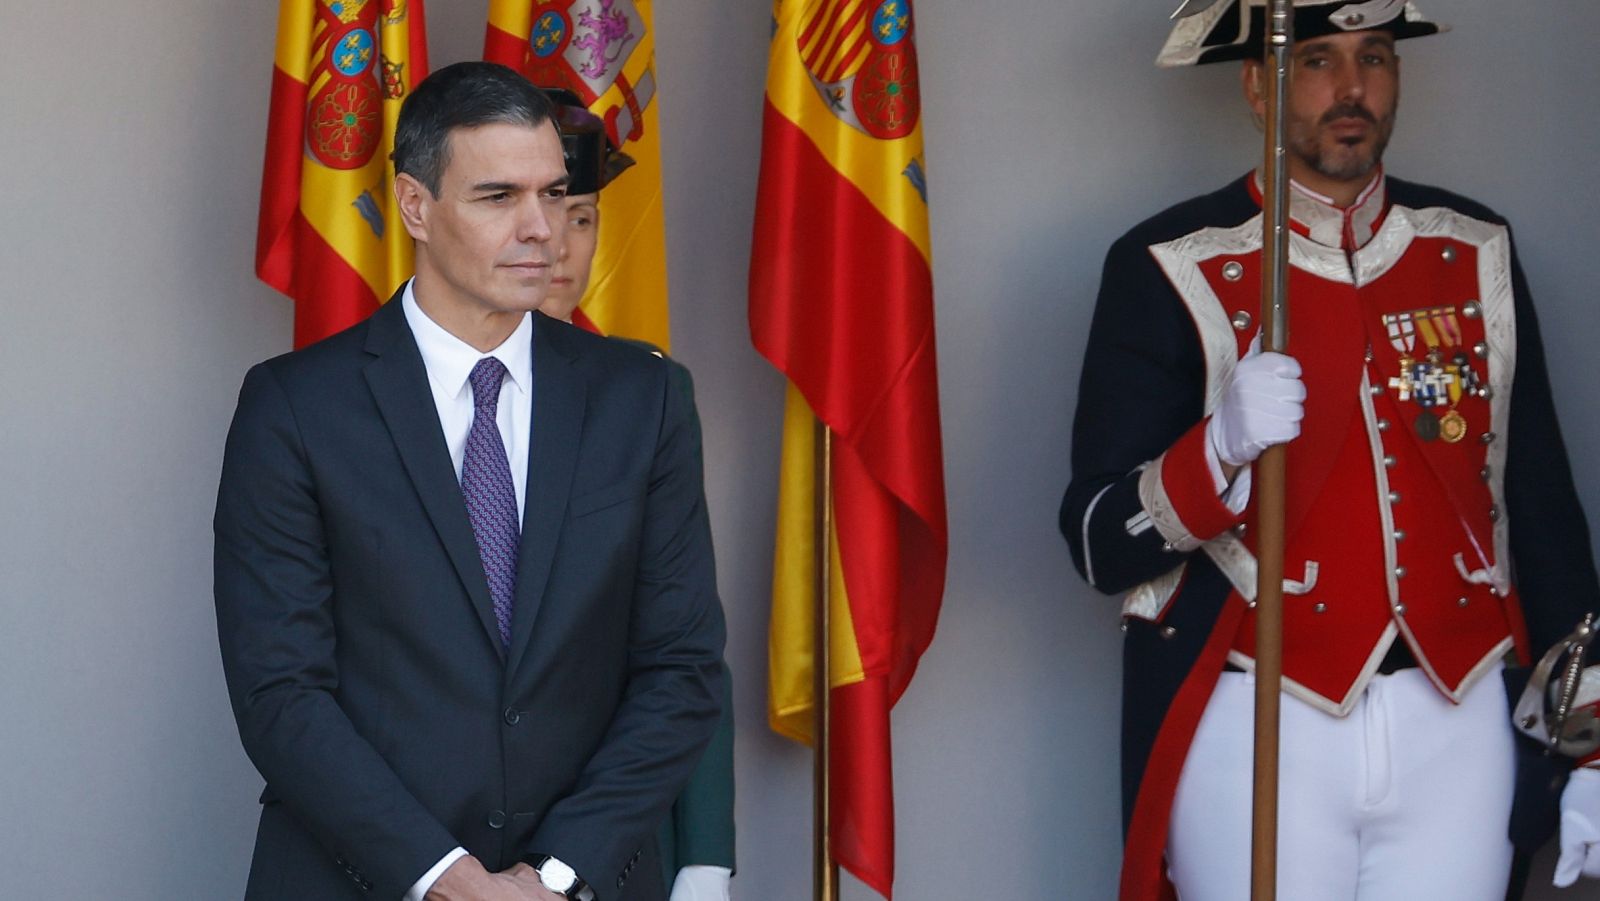 El presidente del Gobierno en funciones, Pedro Sánchez, ha sido recibido entre abucheos y gritos de "que te vote Txapote" al comiendo del desfile del Día de la Fiesta Nacional de 2023.